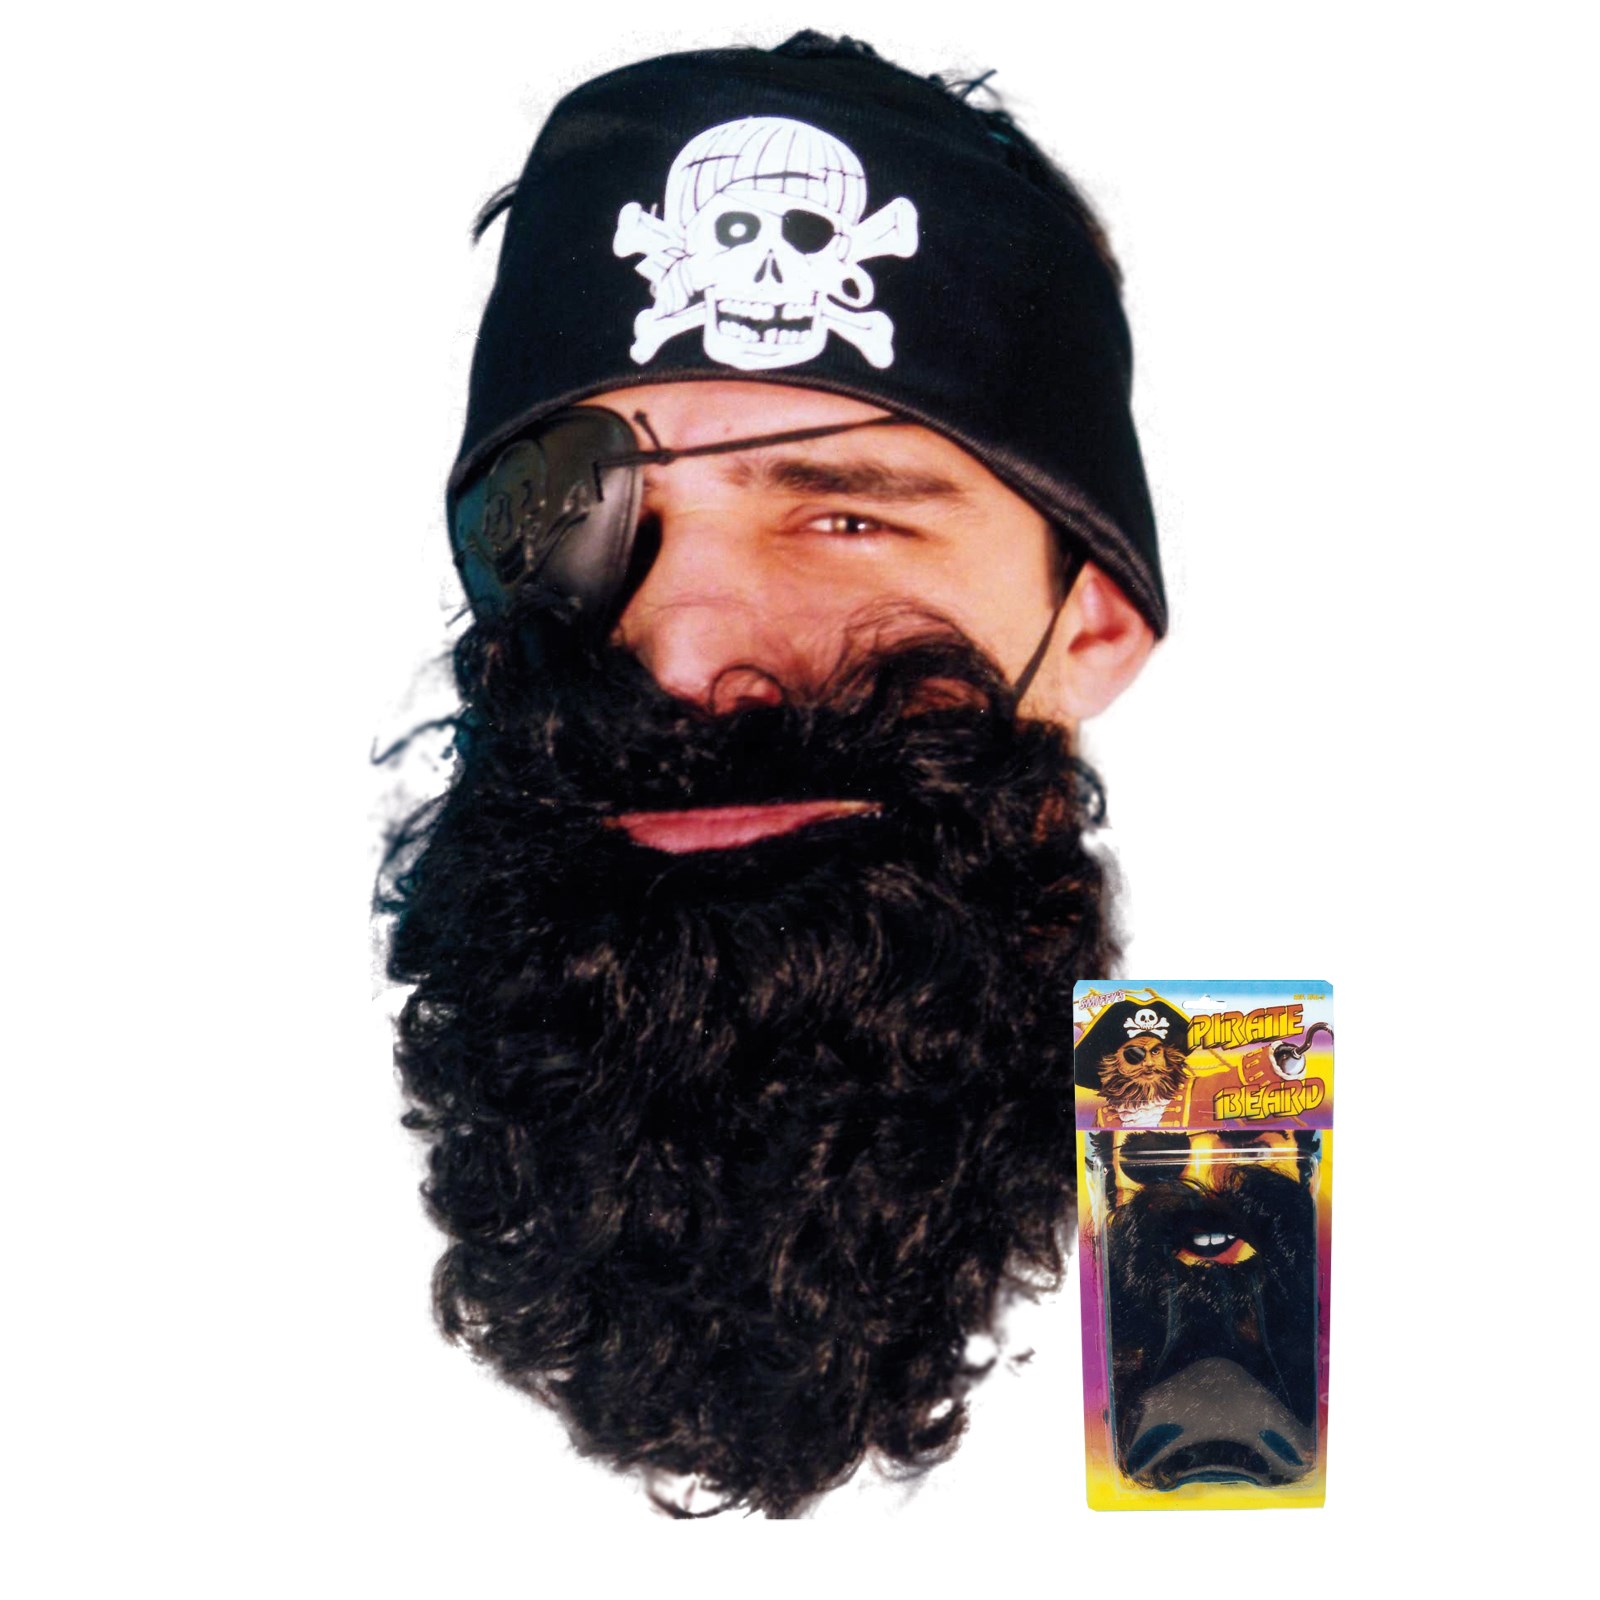 Black Pirate Beard